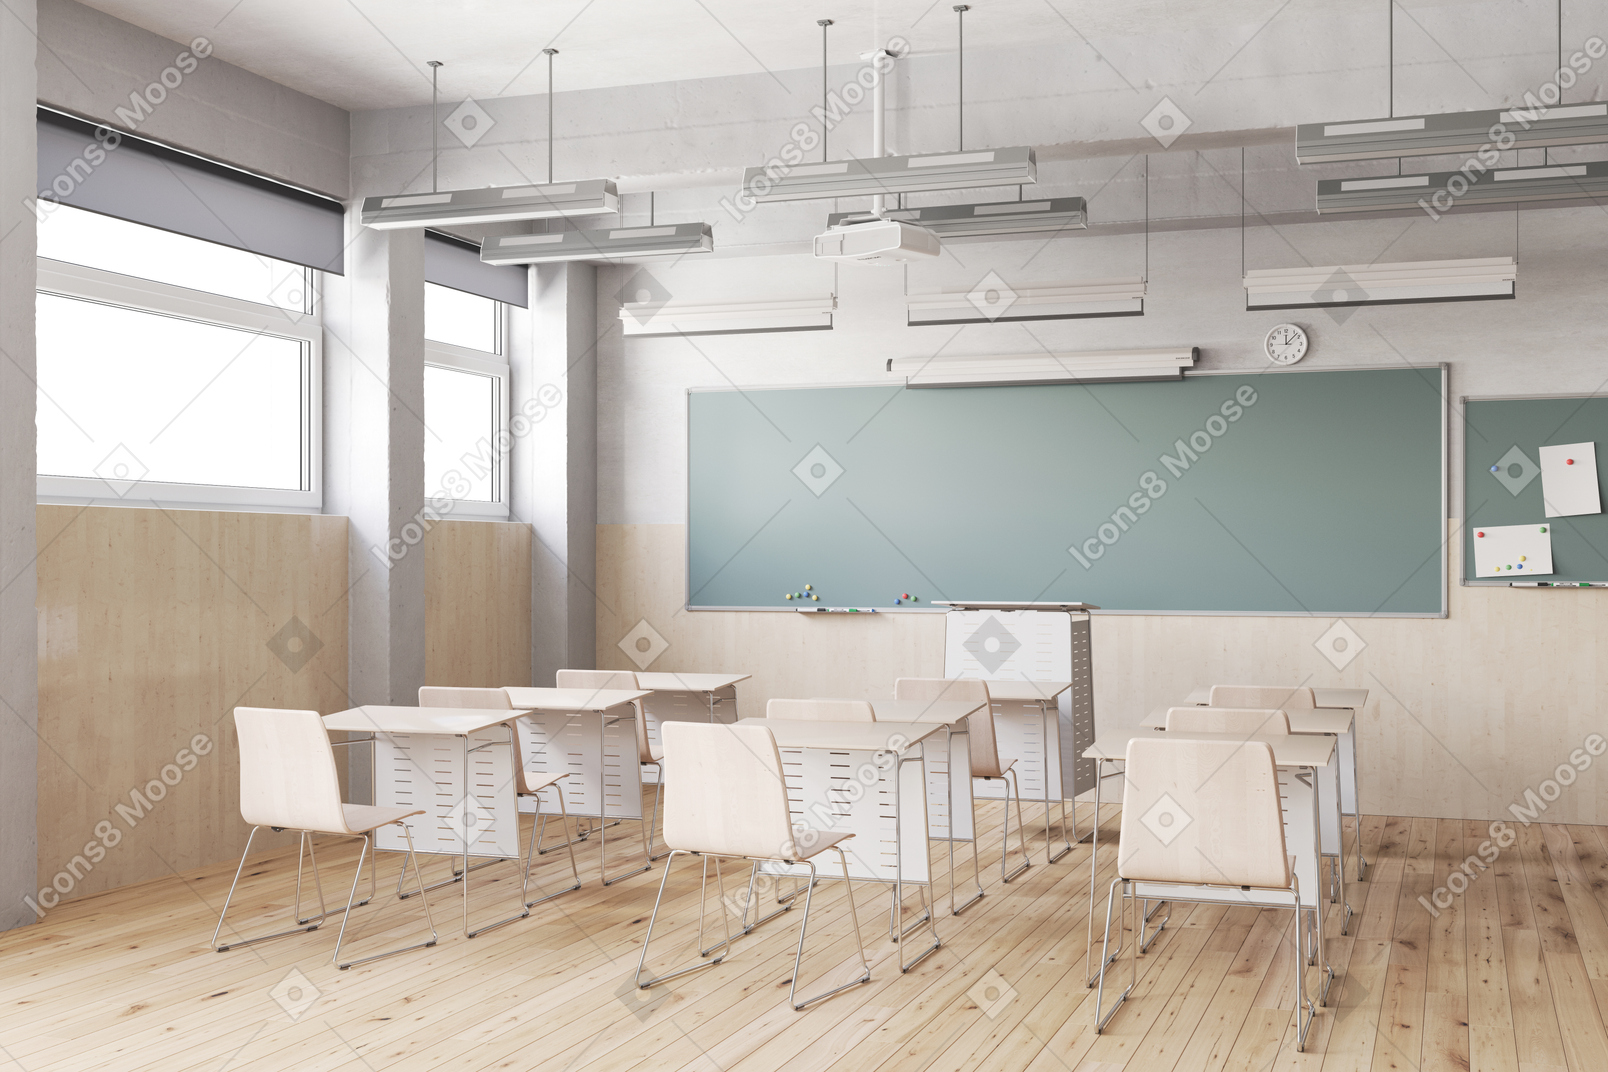 Salle de classe avec bureaux, chaises et tableau noir